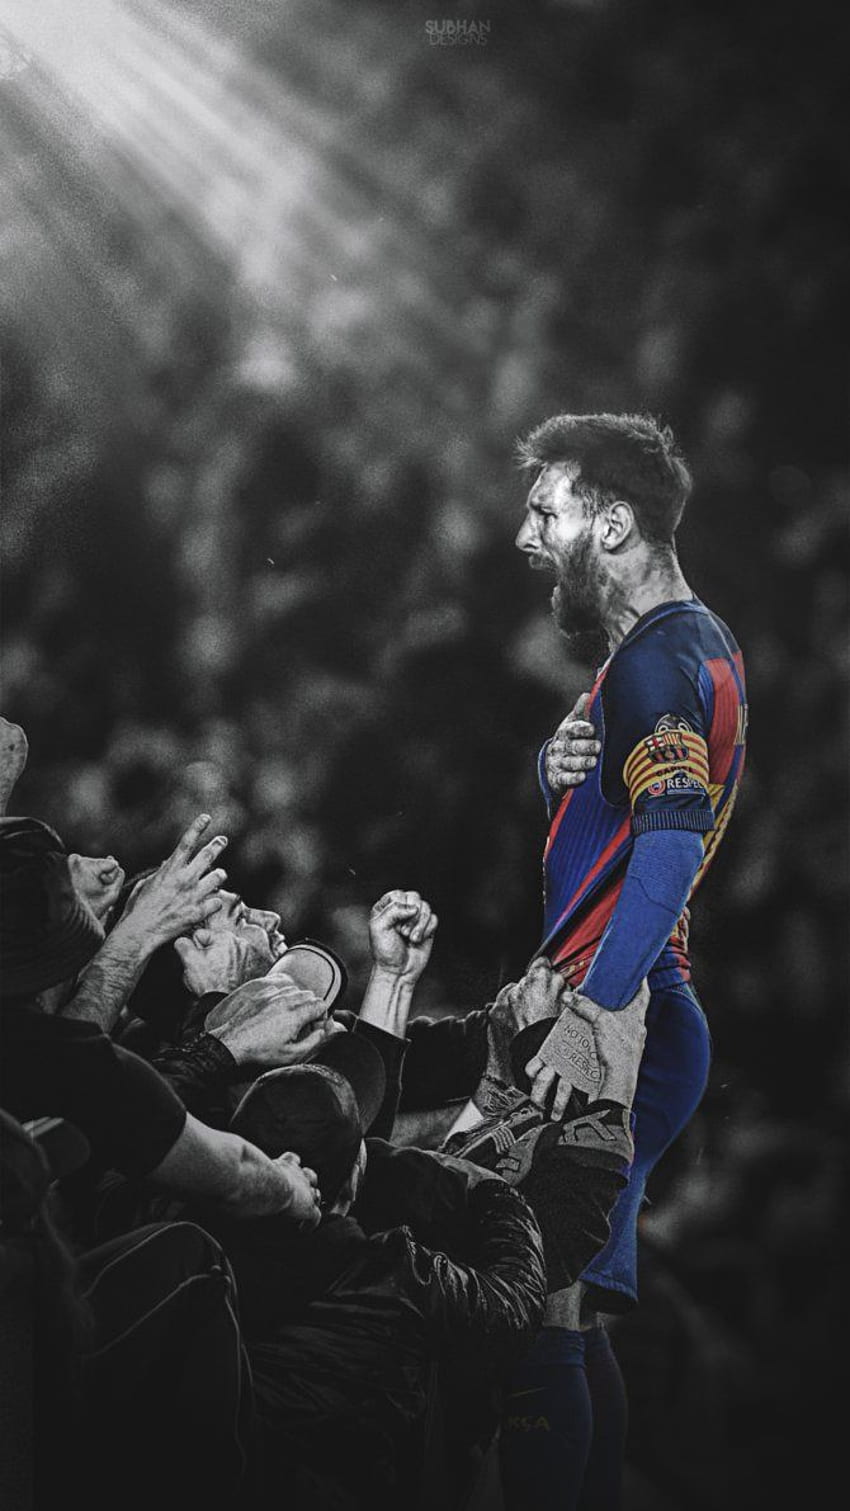 Hình nền Messi đẹp là một sự lựa chọn hoàn hảo để thể hiện tình yêu của bạn đối với Messi. Với các hình ảnh đẹp, sắc nét và độc đáo, bạn sẽ luôn nhớ đến chính người hùng của mình mỗi khi nhìn vào màn hình máy tính hoặc điện thoại của mình.